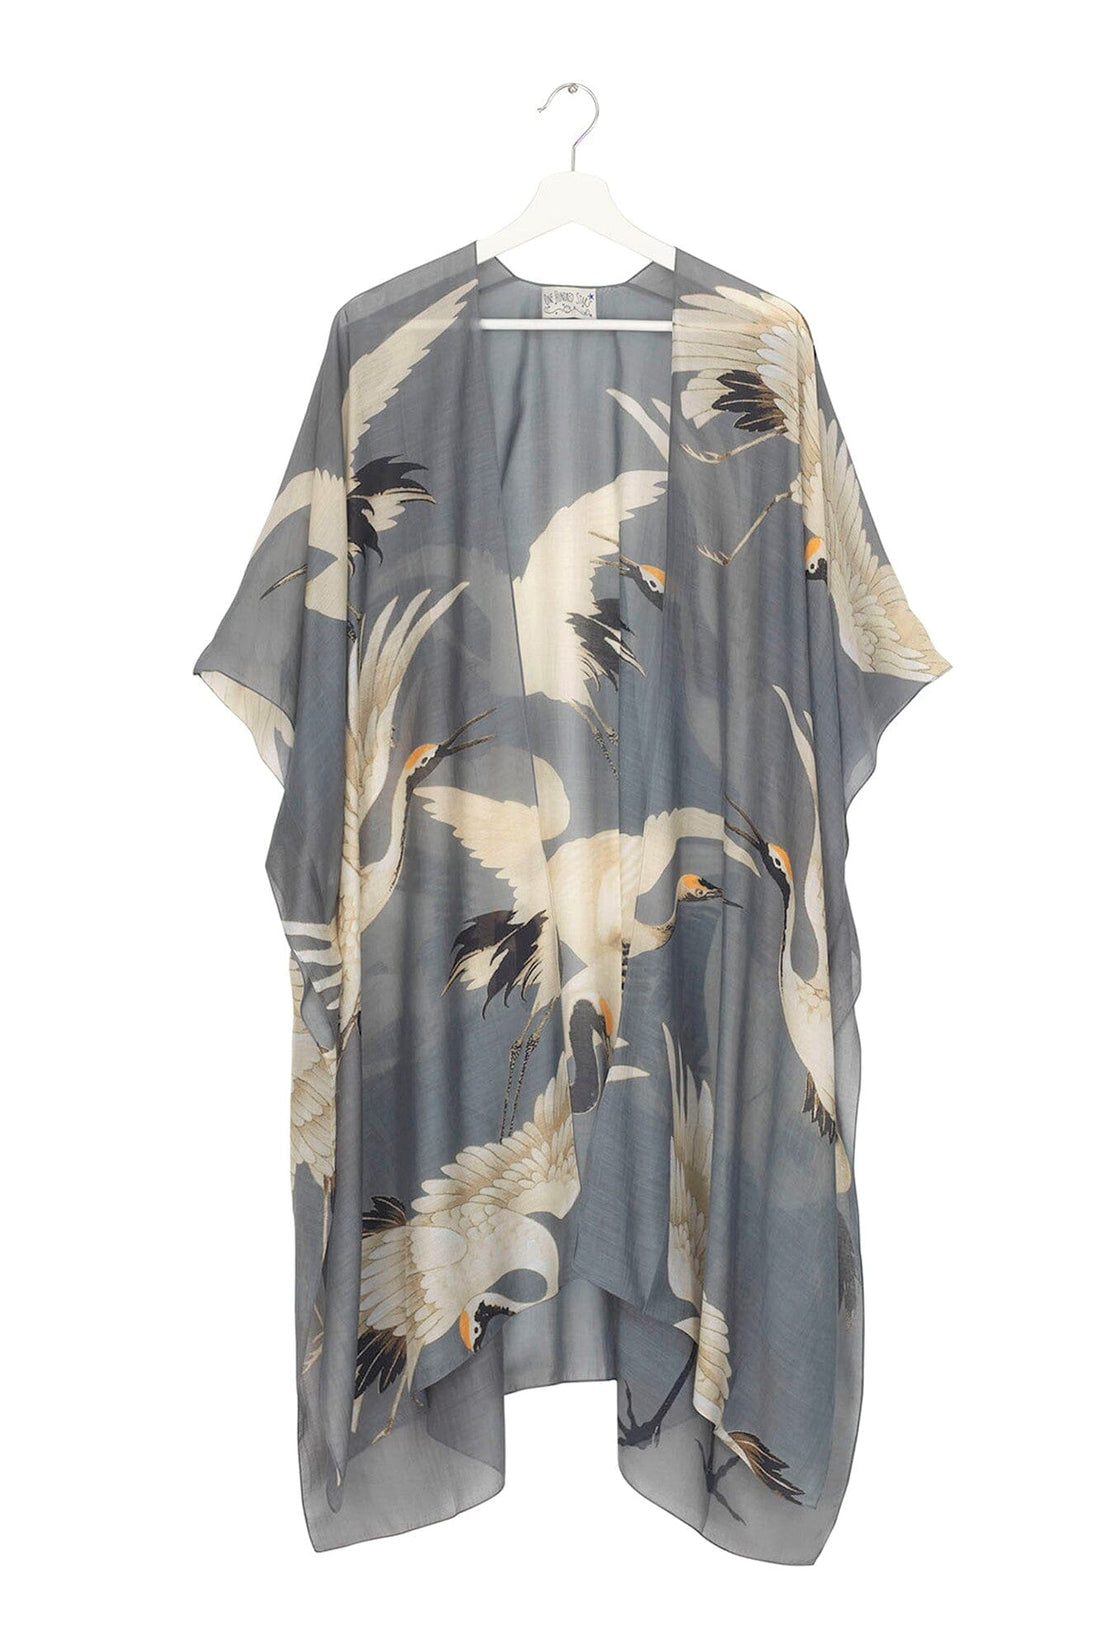 Stork Slate Grey Throwover Open Kimono - THRSTOSLA Kimonos One Hundred Stars